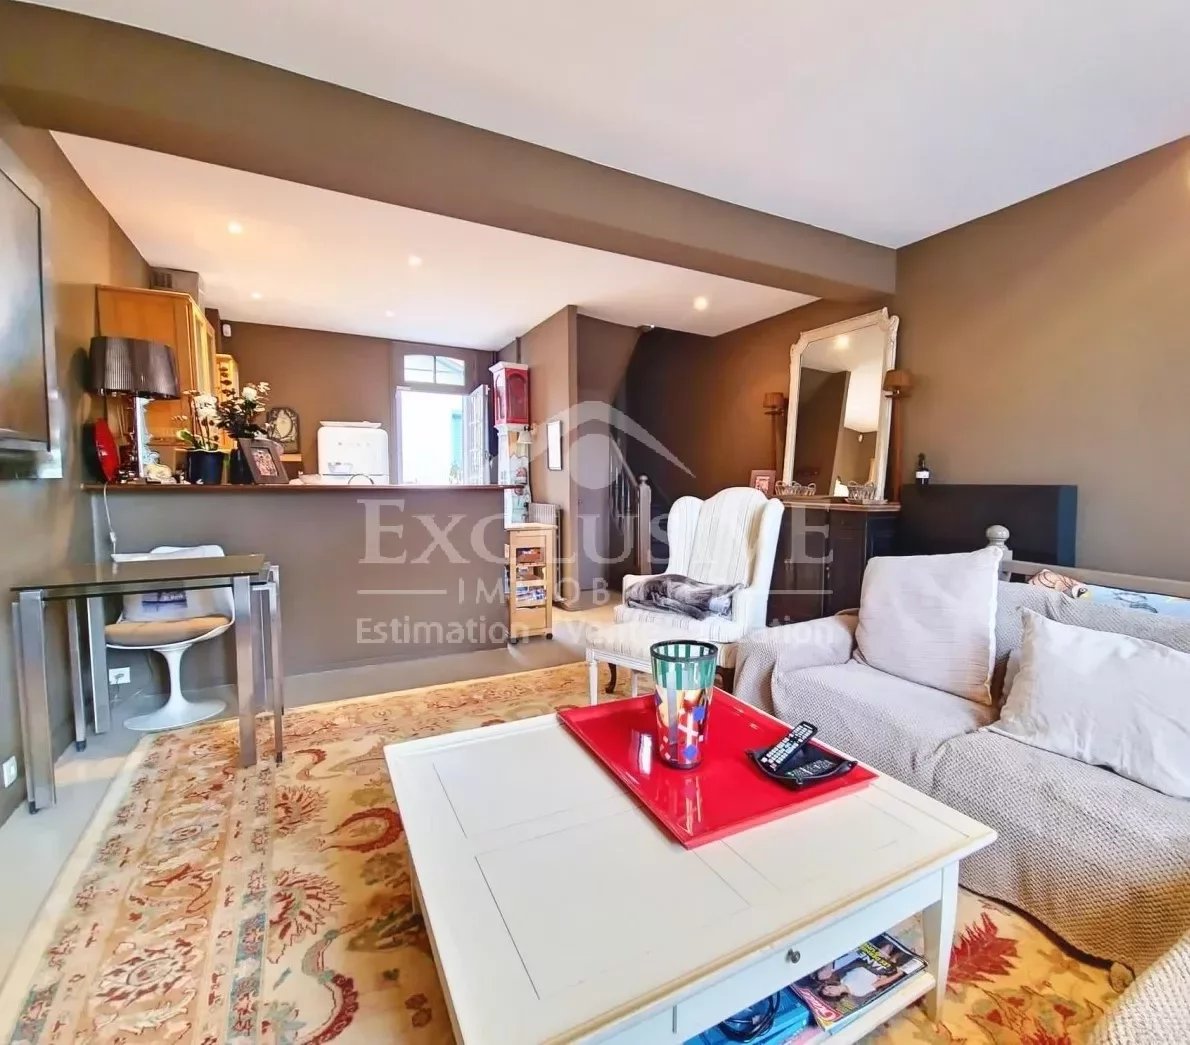 Vente Maison 115m² 5 Pièces à Deauville (14800) - Exclusive Immobilier